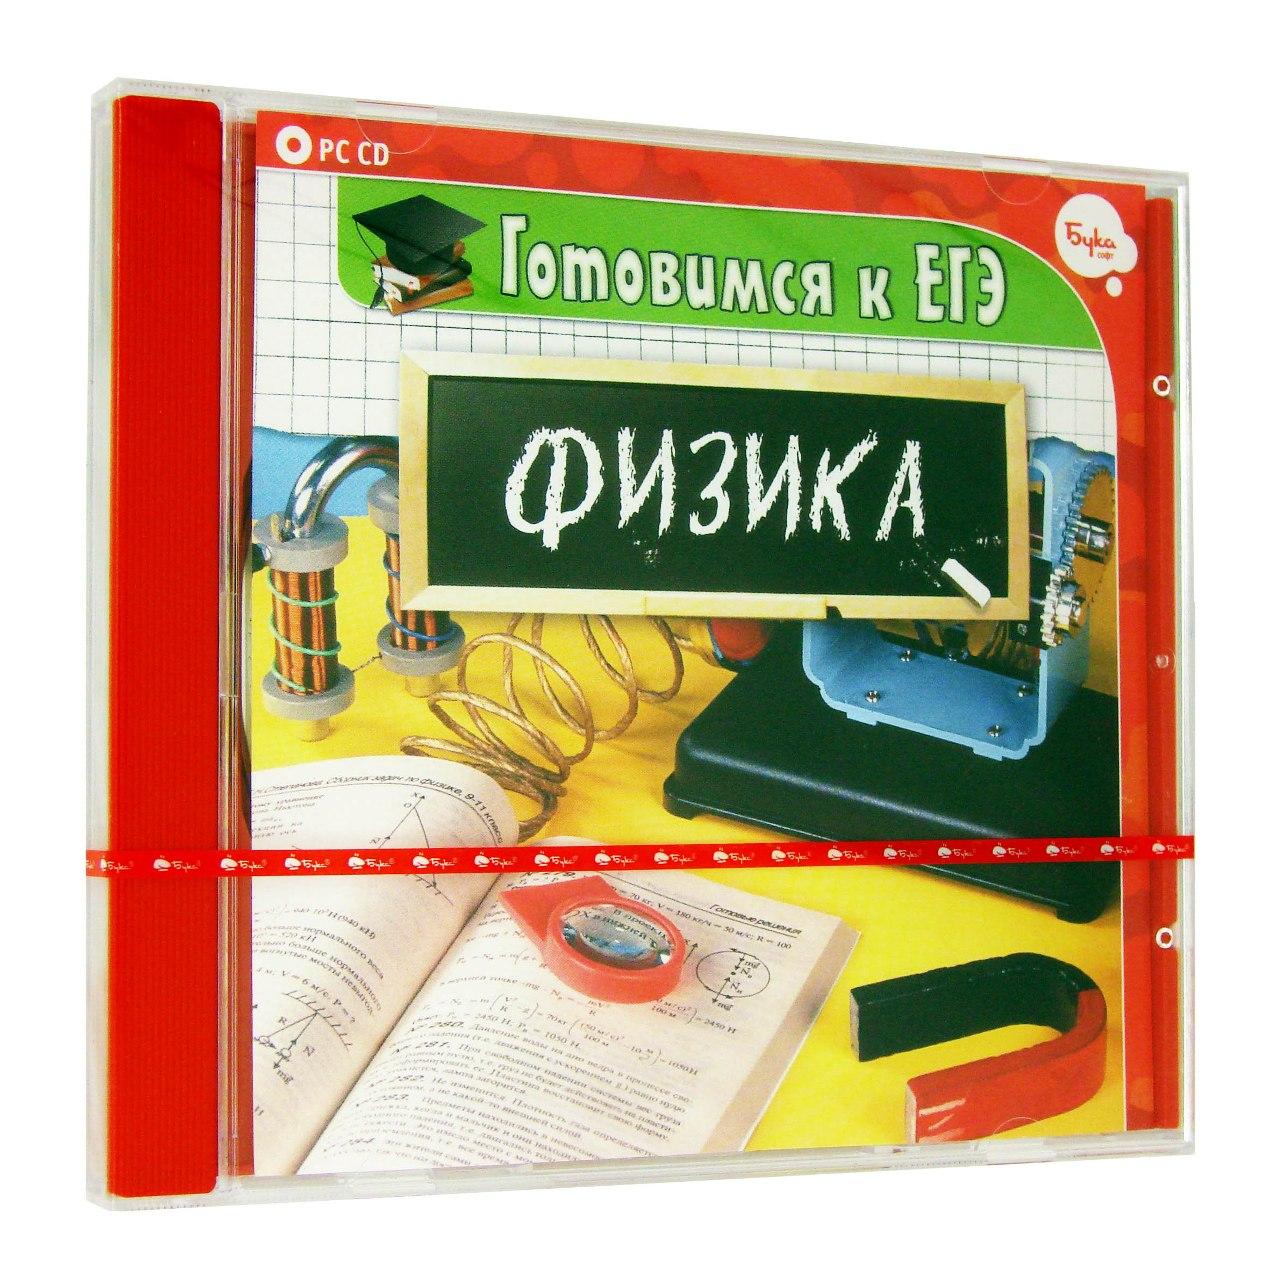 Компьютерный компакт-диск Готовимся к ЕГЭ. Физика (ПК), фирма "Бука", 1CD